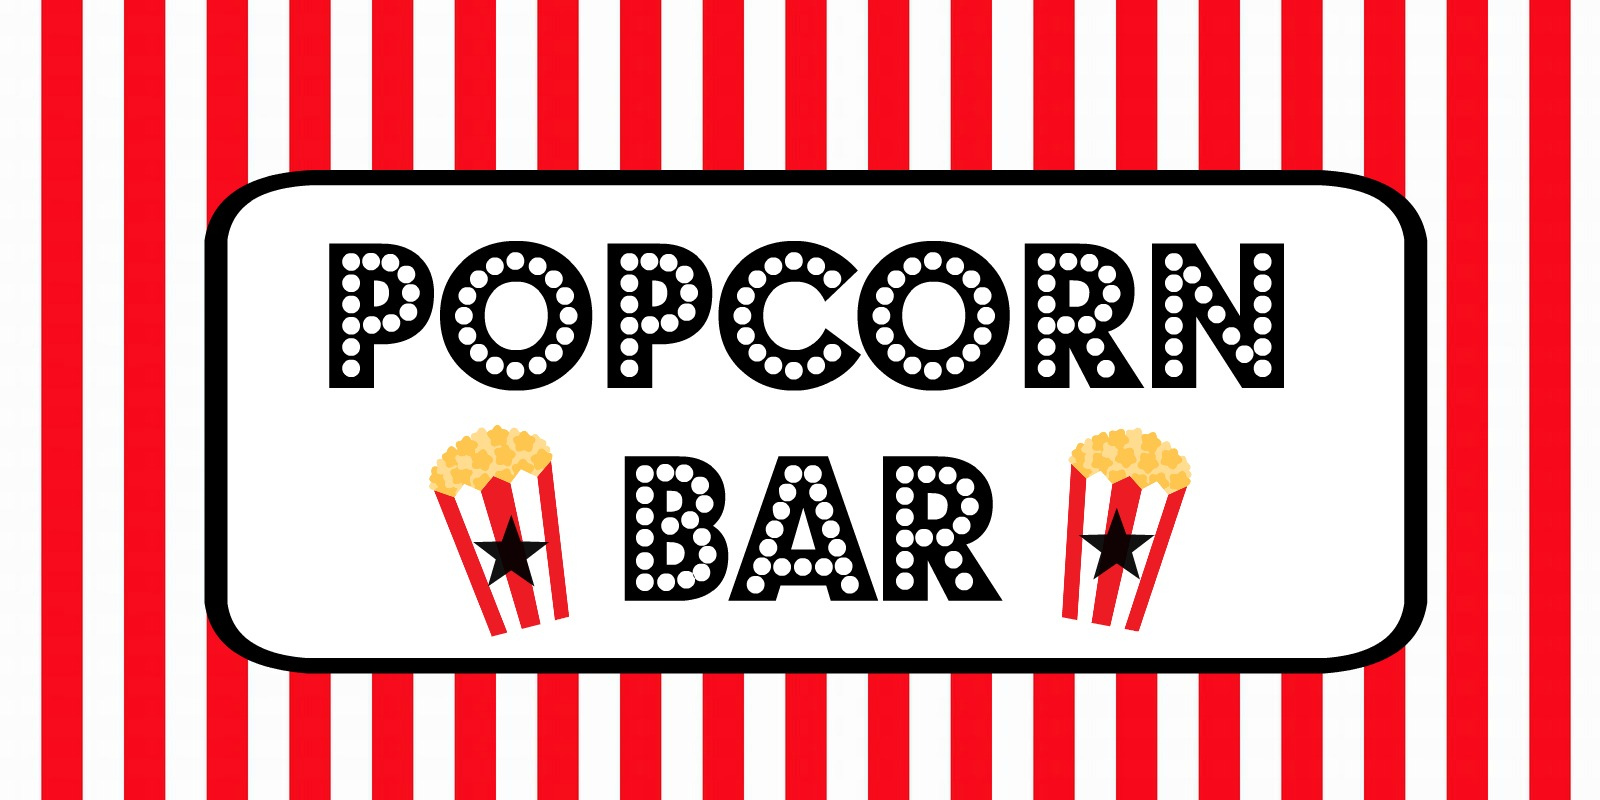 FREE Movie Night Popcorn Bar Printables